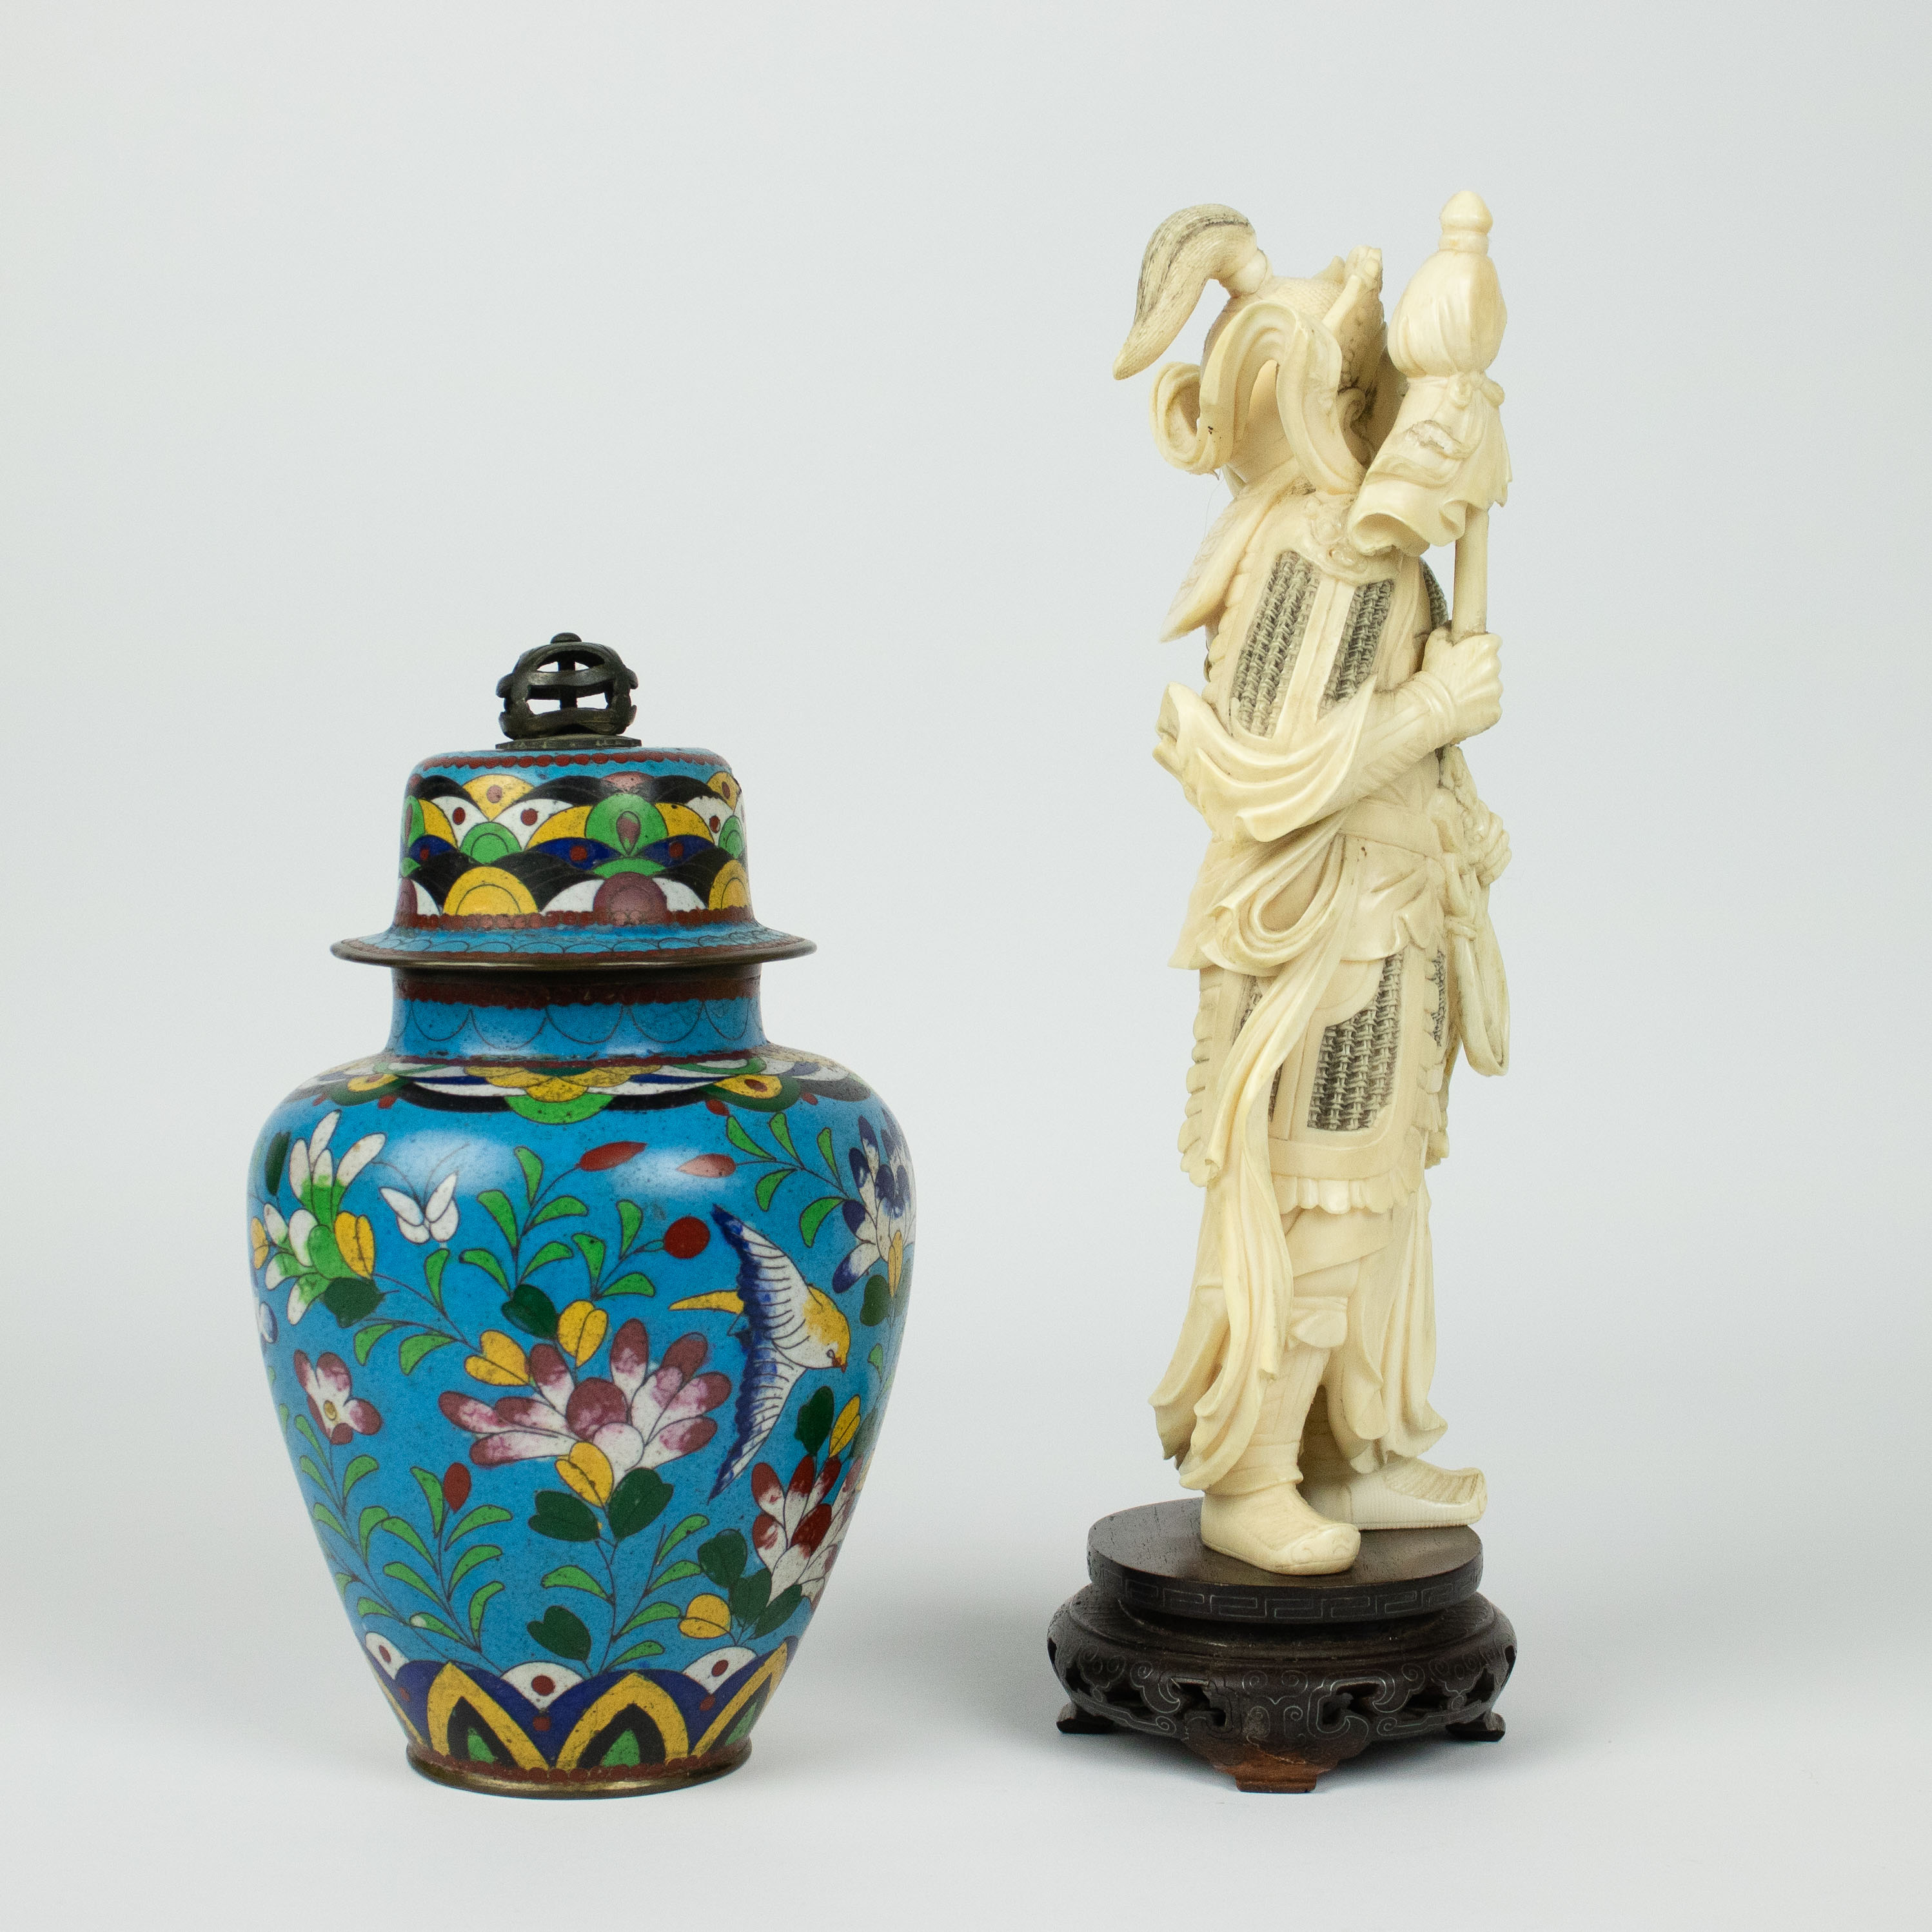 Ivory figure possibly depicting Ehr Lang Shen + cloisonné lidded vase - Image 4 of 6